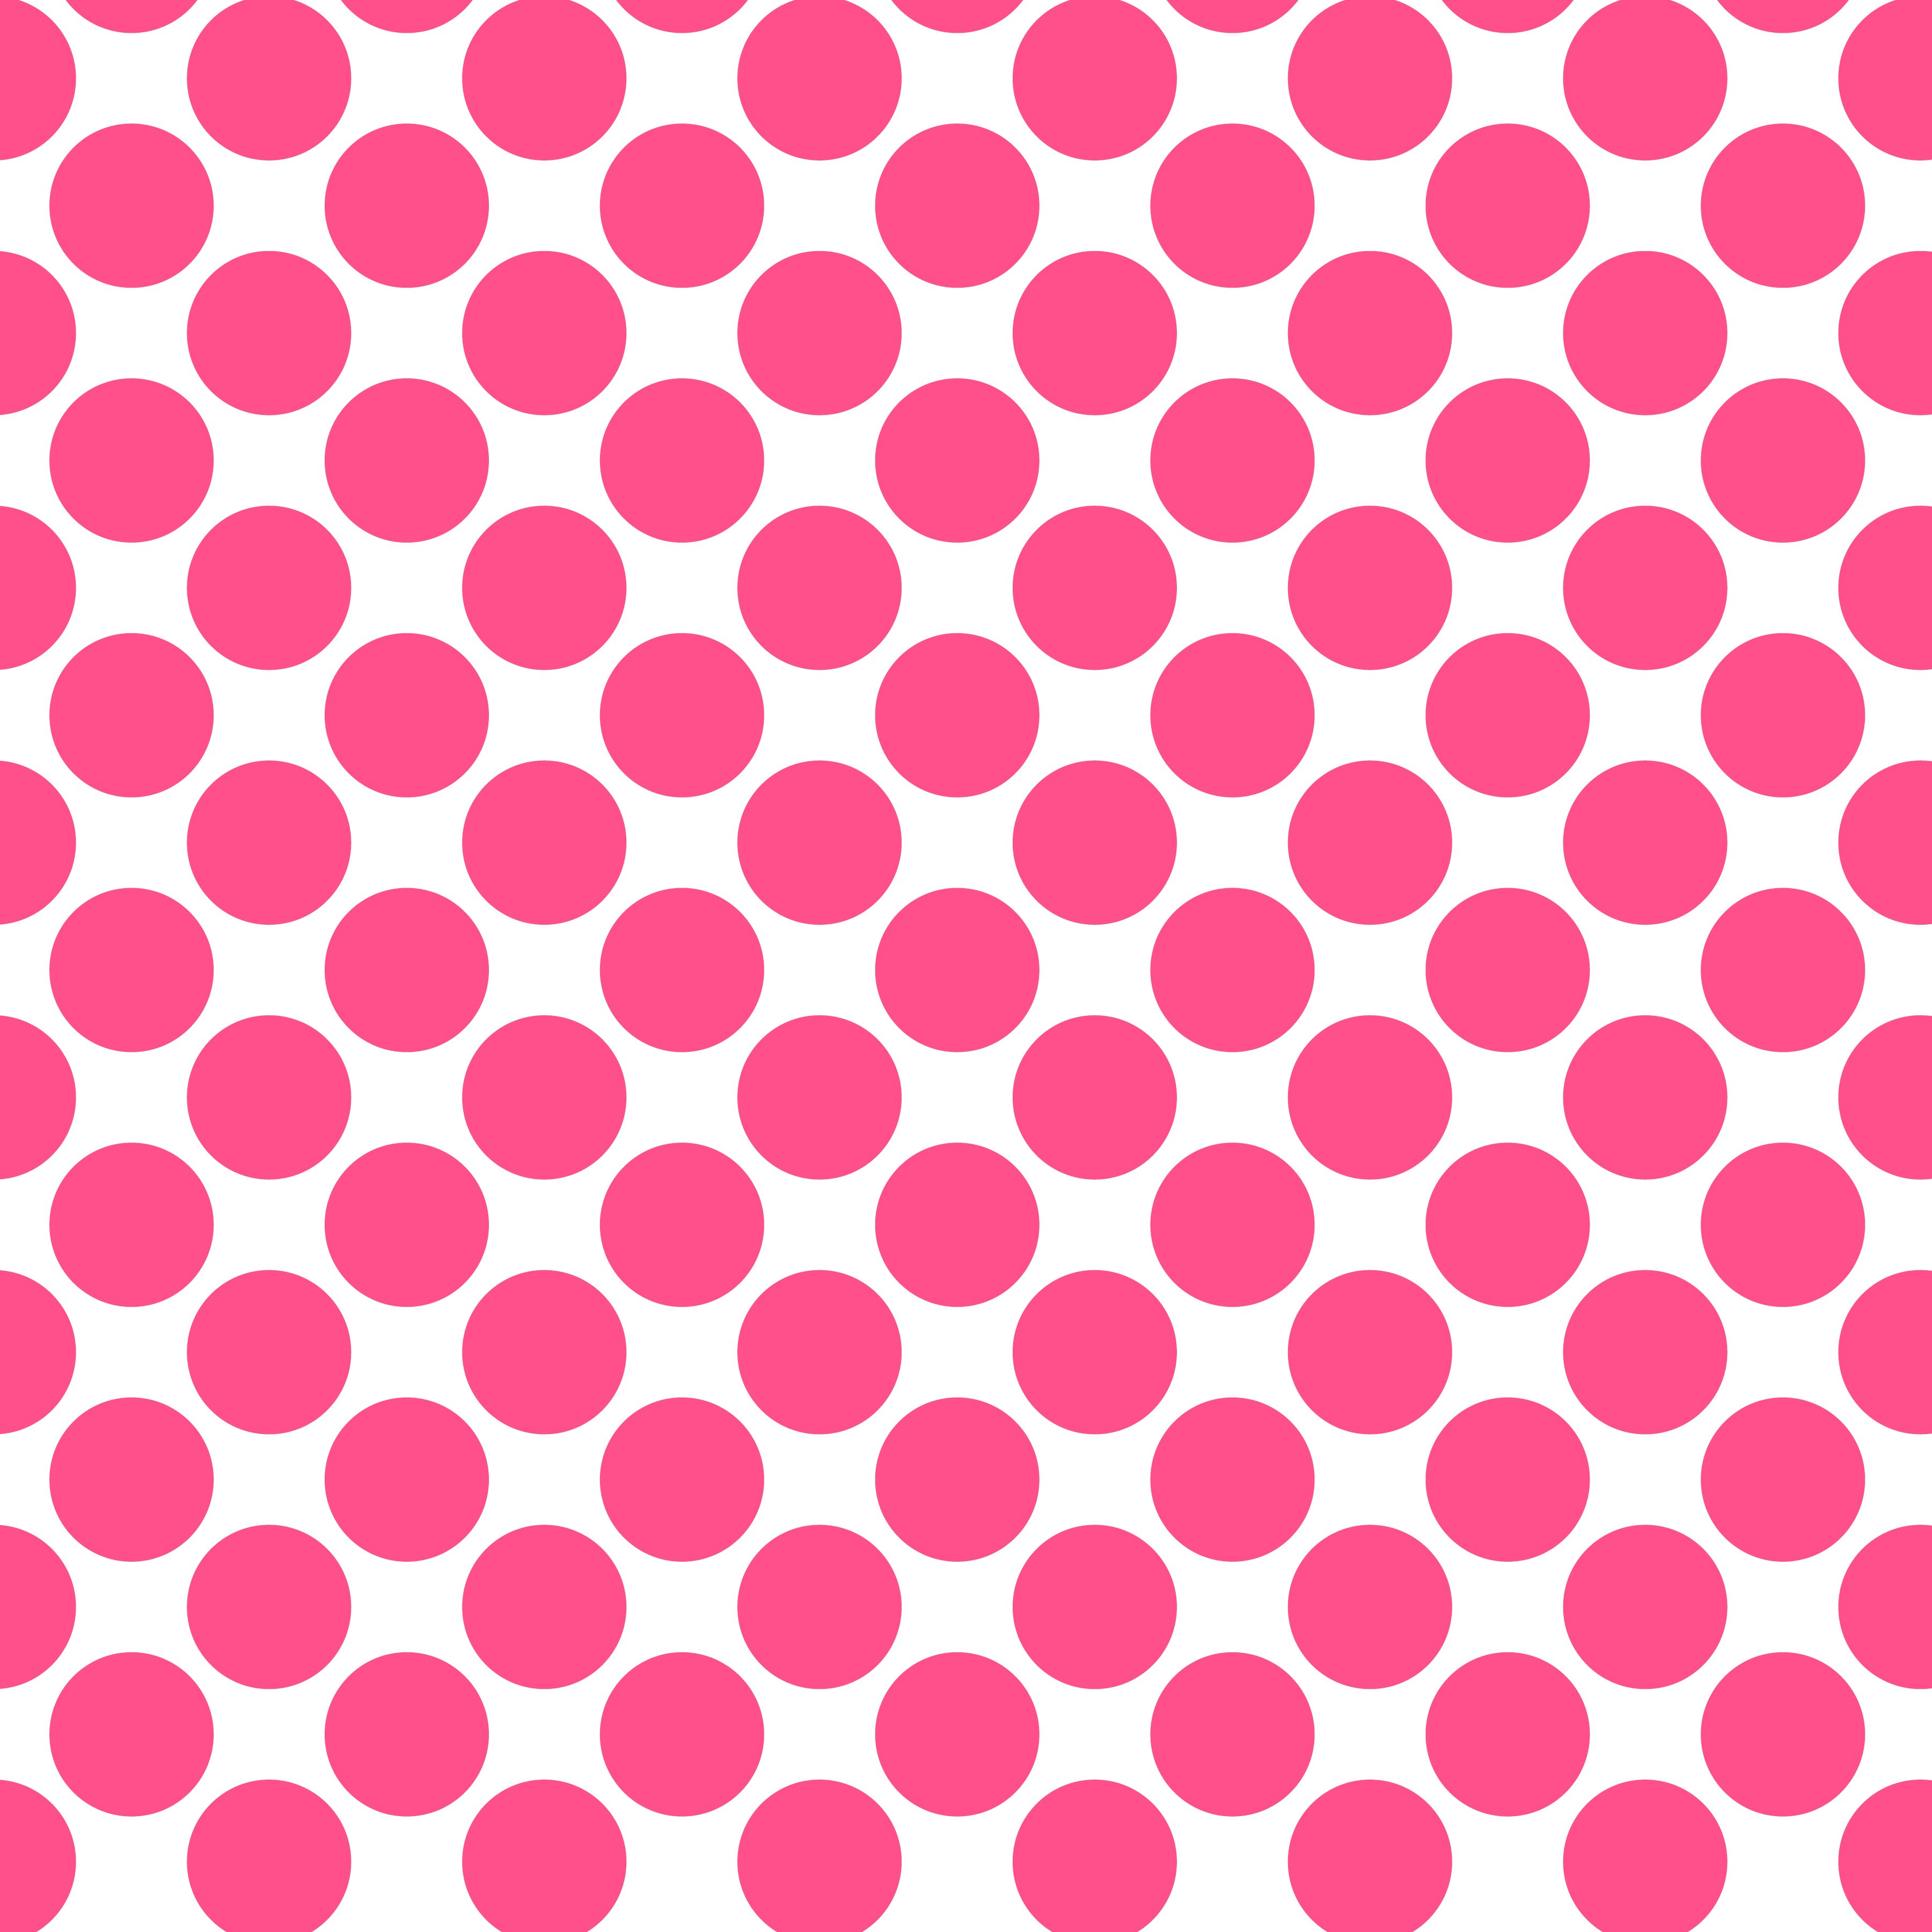 Polka Dot 1 cm Beyaz - Fransız Gül Pembesi Puantiye Dekoratif Baskı Kumaş